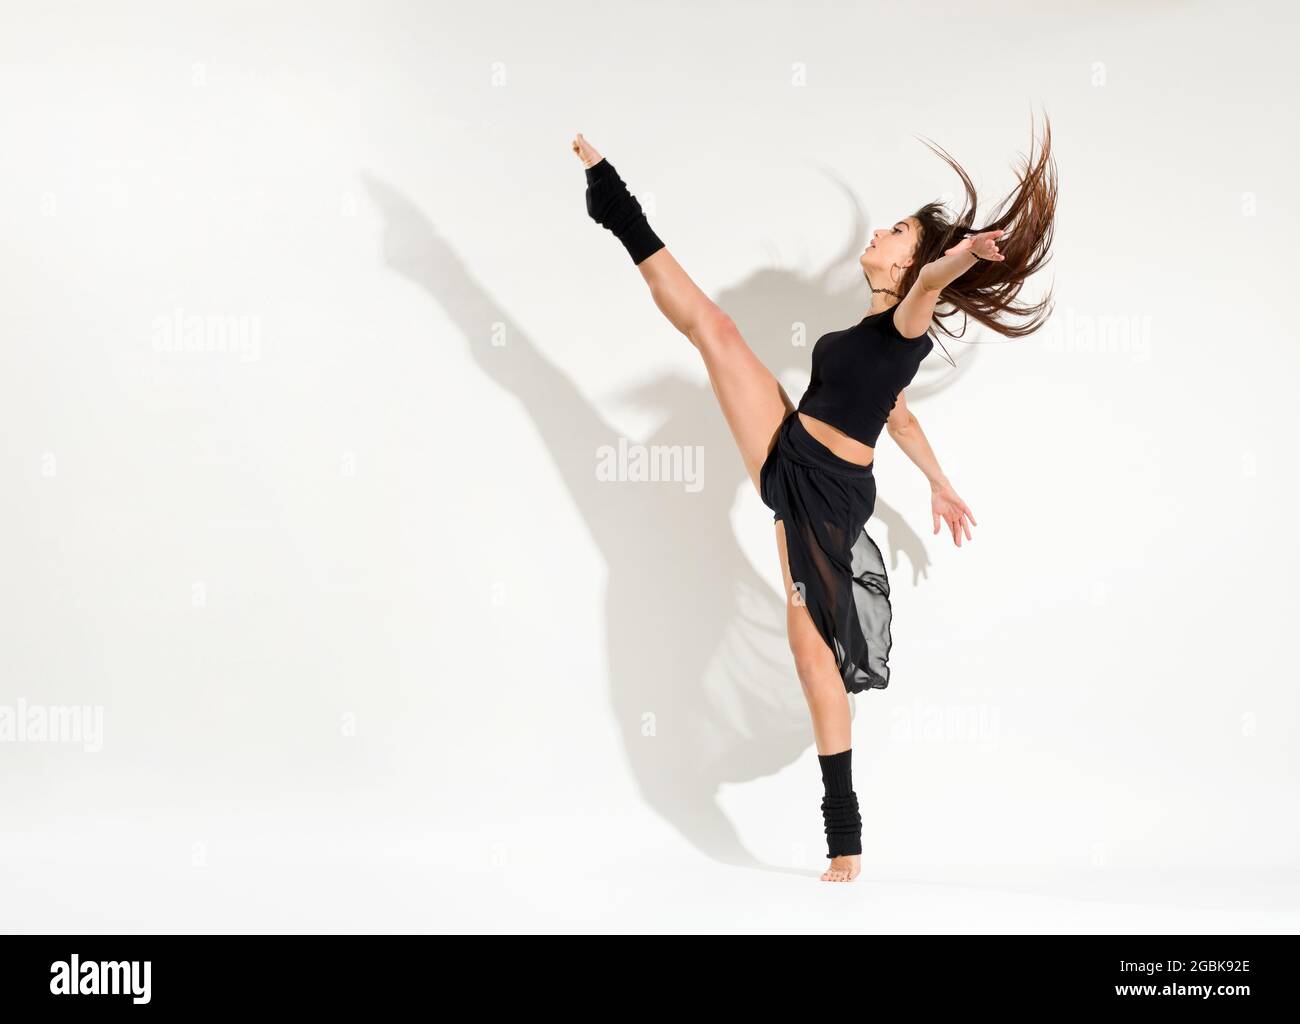 Agil fit junge Frau macht eine Eiskunstläuferin dynamische Entwicklung Pose ihre Haare und heben ihr Bein auf hoch über weiß mit einem Schatten und Copyspace Stockfoto